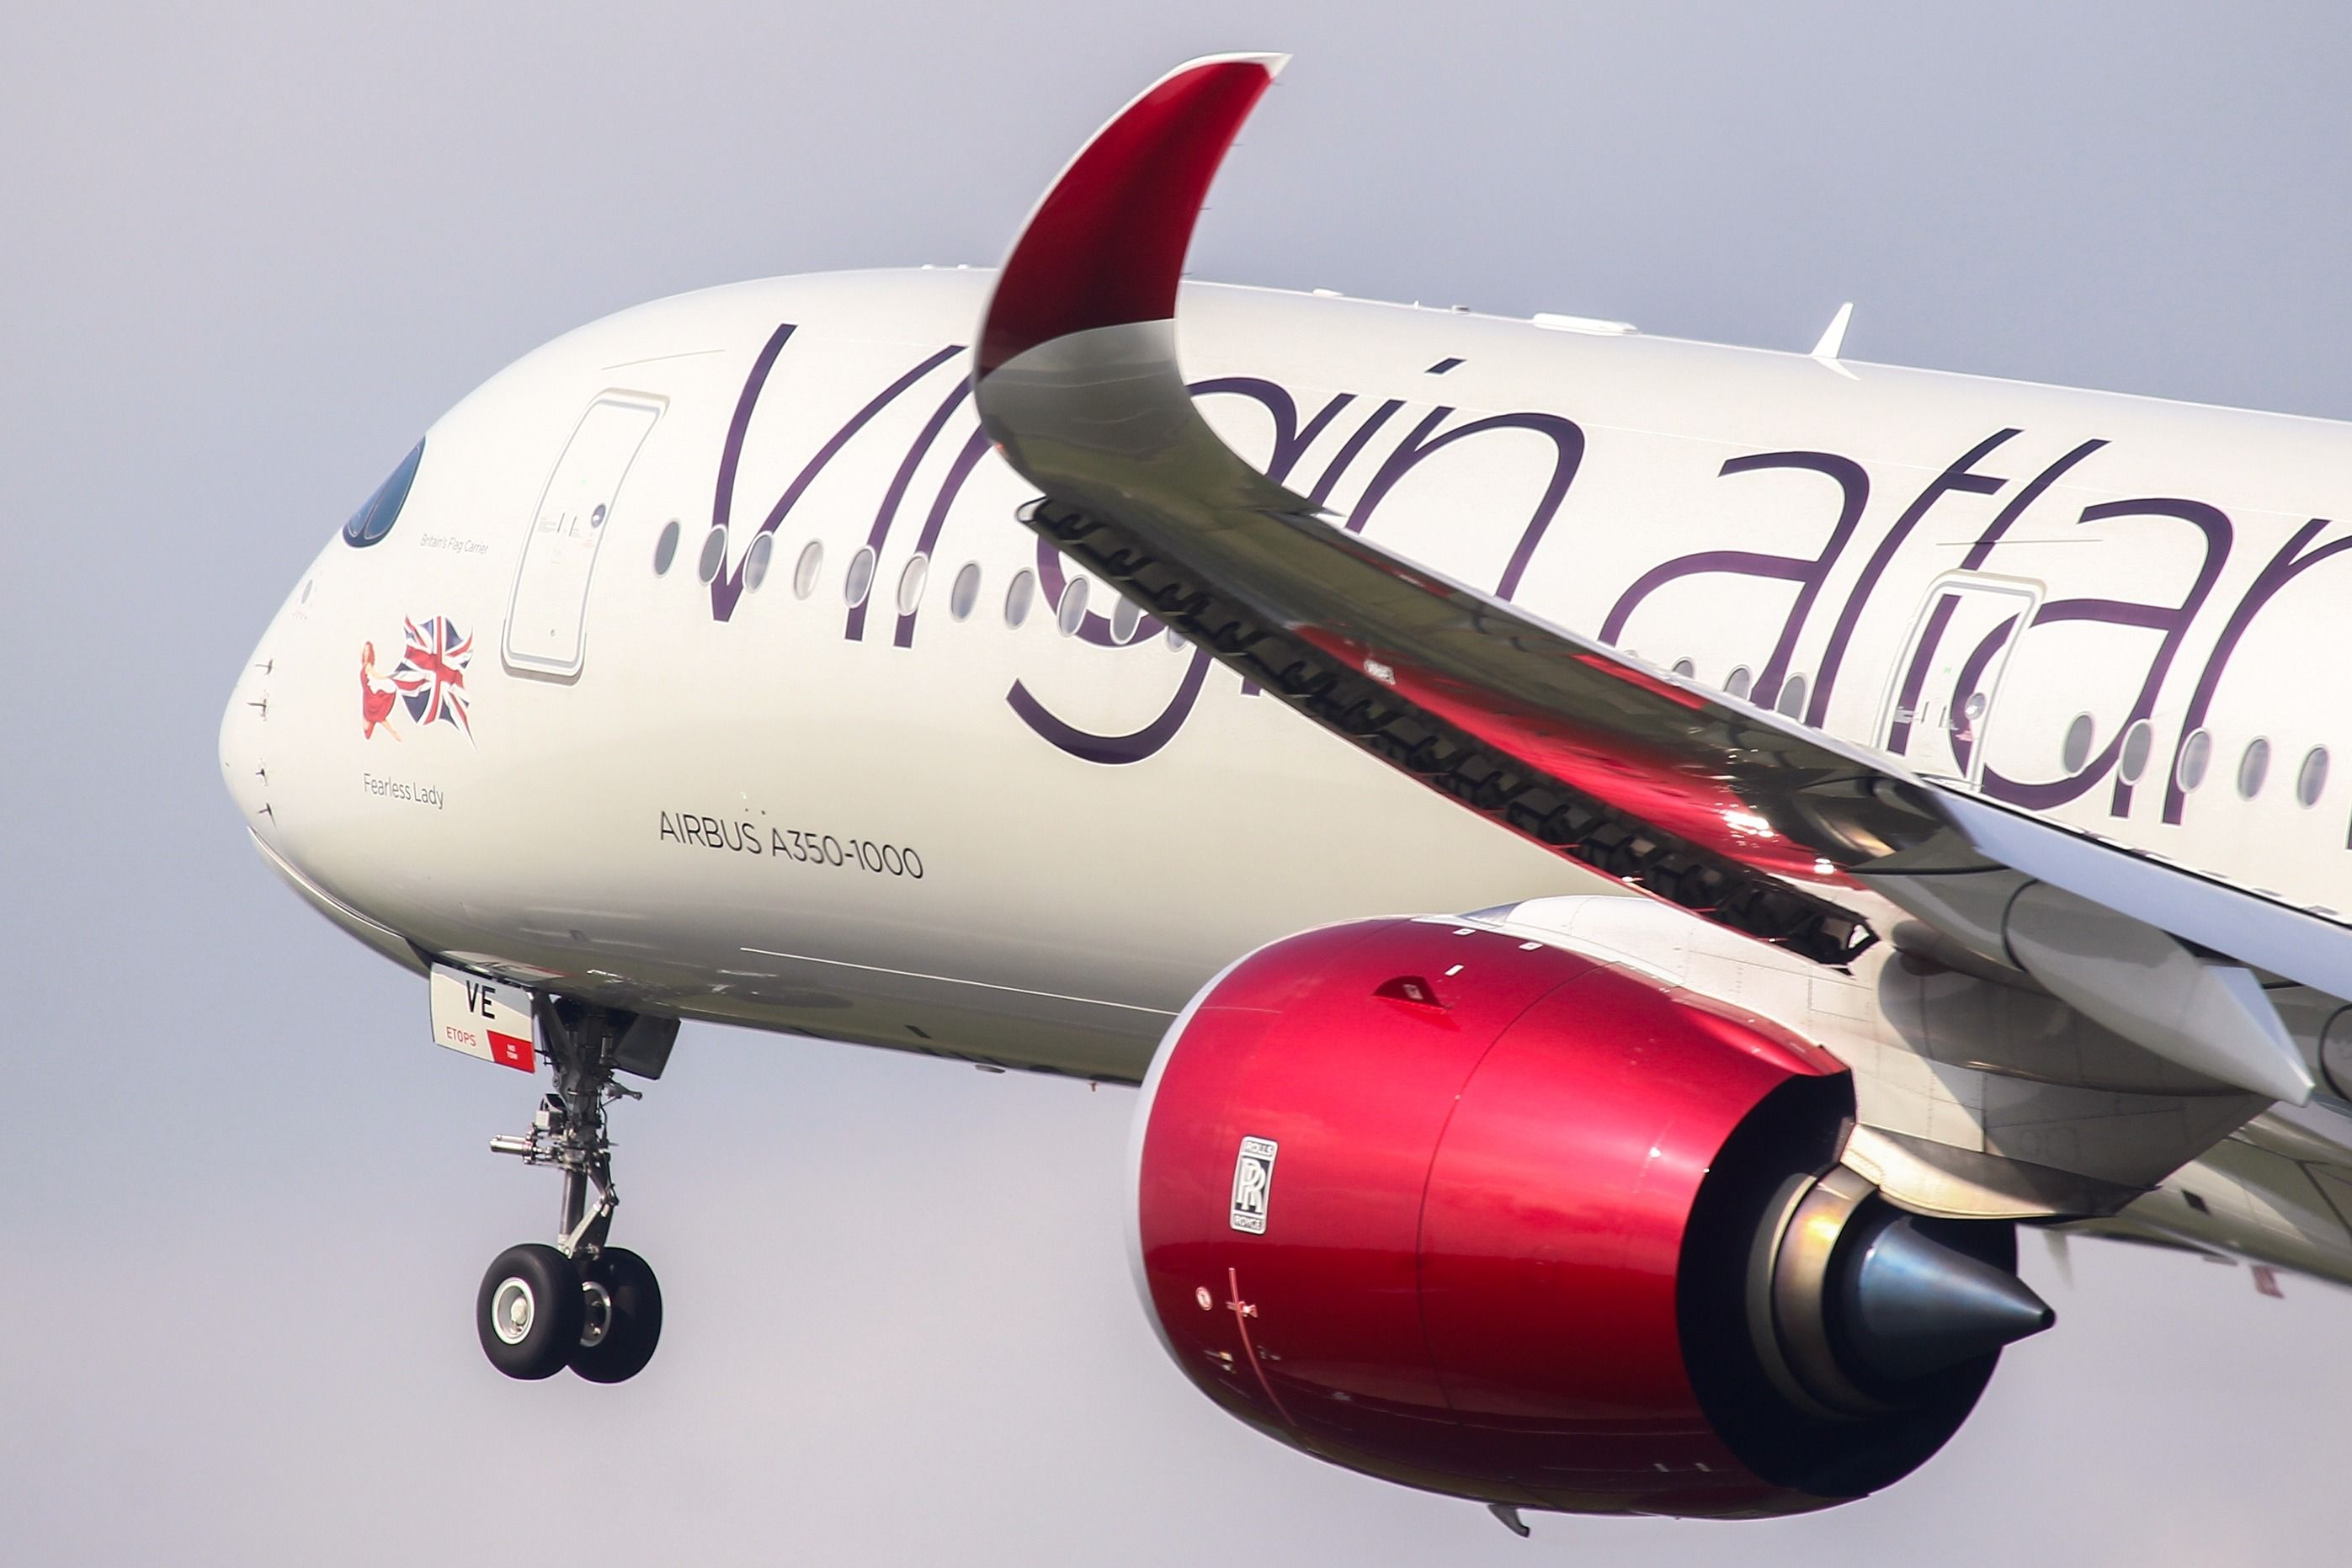 Virgin Atlantic Airbus A350-1000 departing shutterstock_2209629367